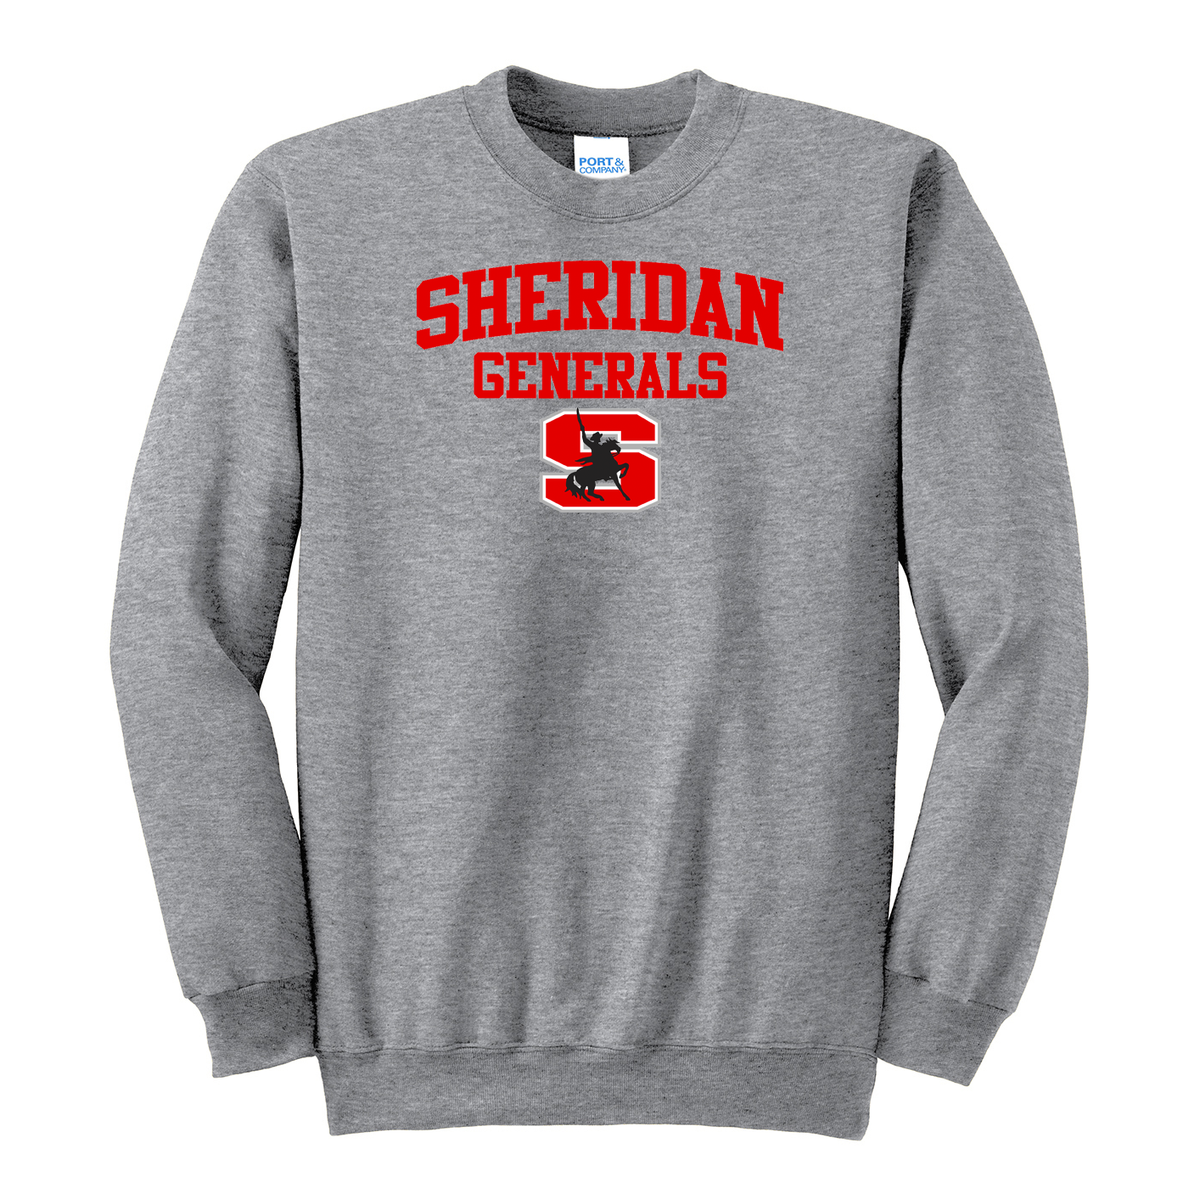 Sheridan Generals Crew Neck Sweater